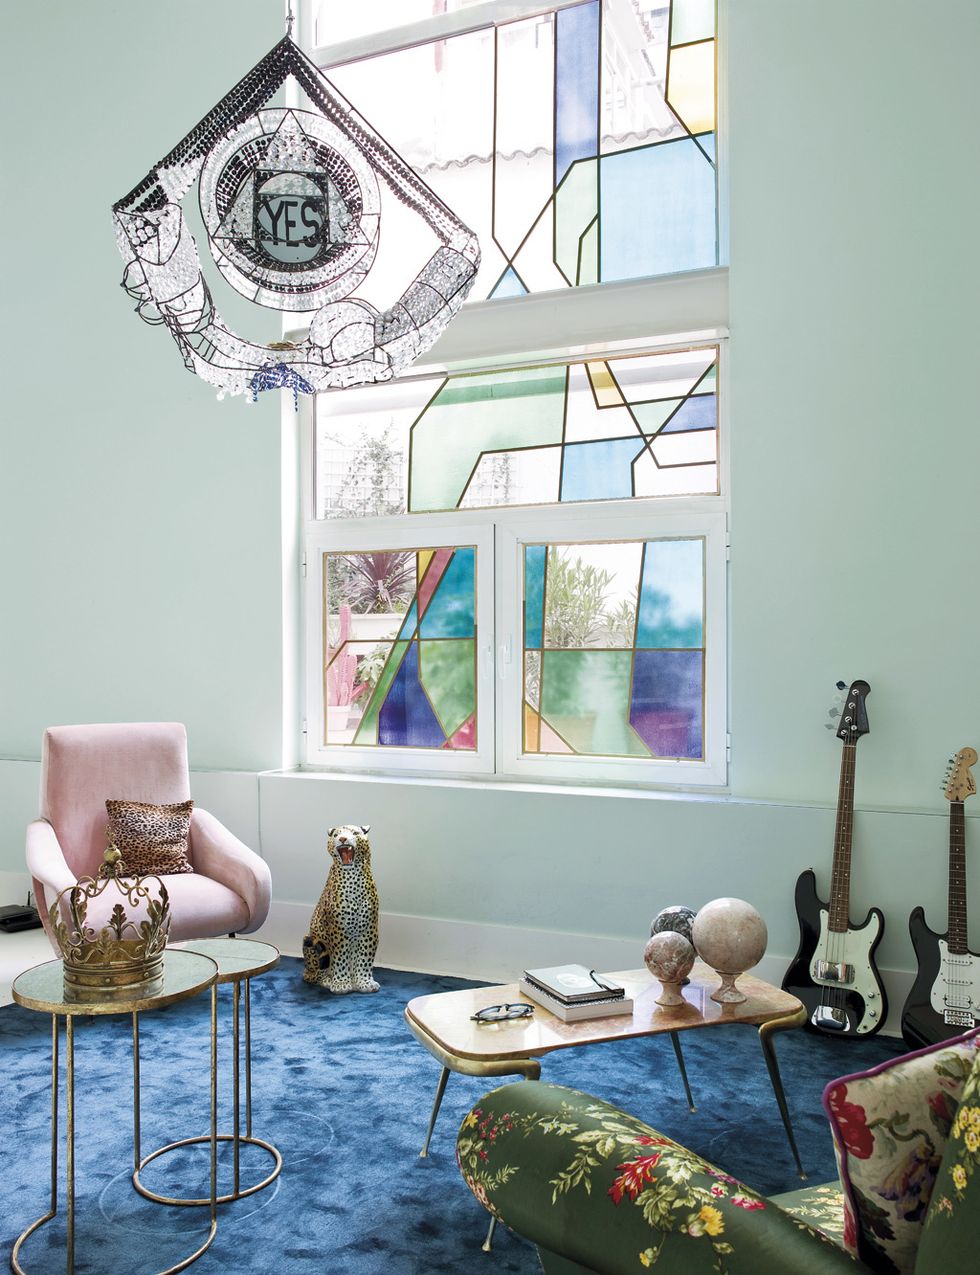 <p>La espectacular escultura de cristal de Amanda Charchian &nbsp; domina el espacio. Mesas-nido, de Anmoder, con una corona vintage; mesa, de L.A. Studio, y guitarras de Bea.</p>